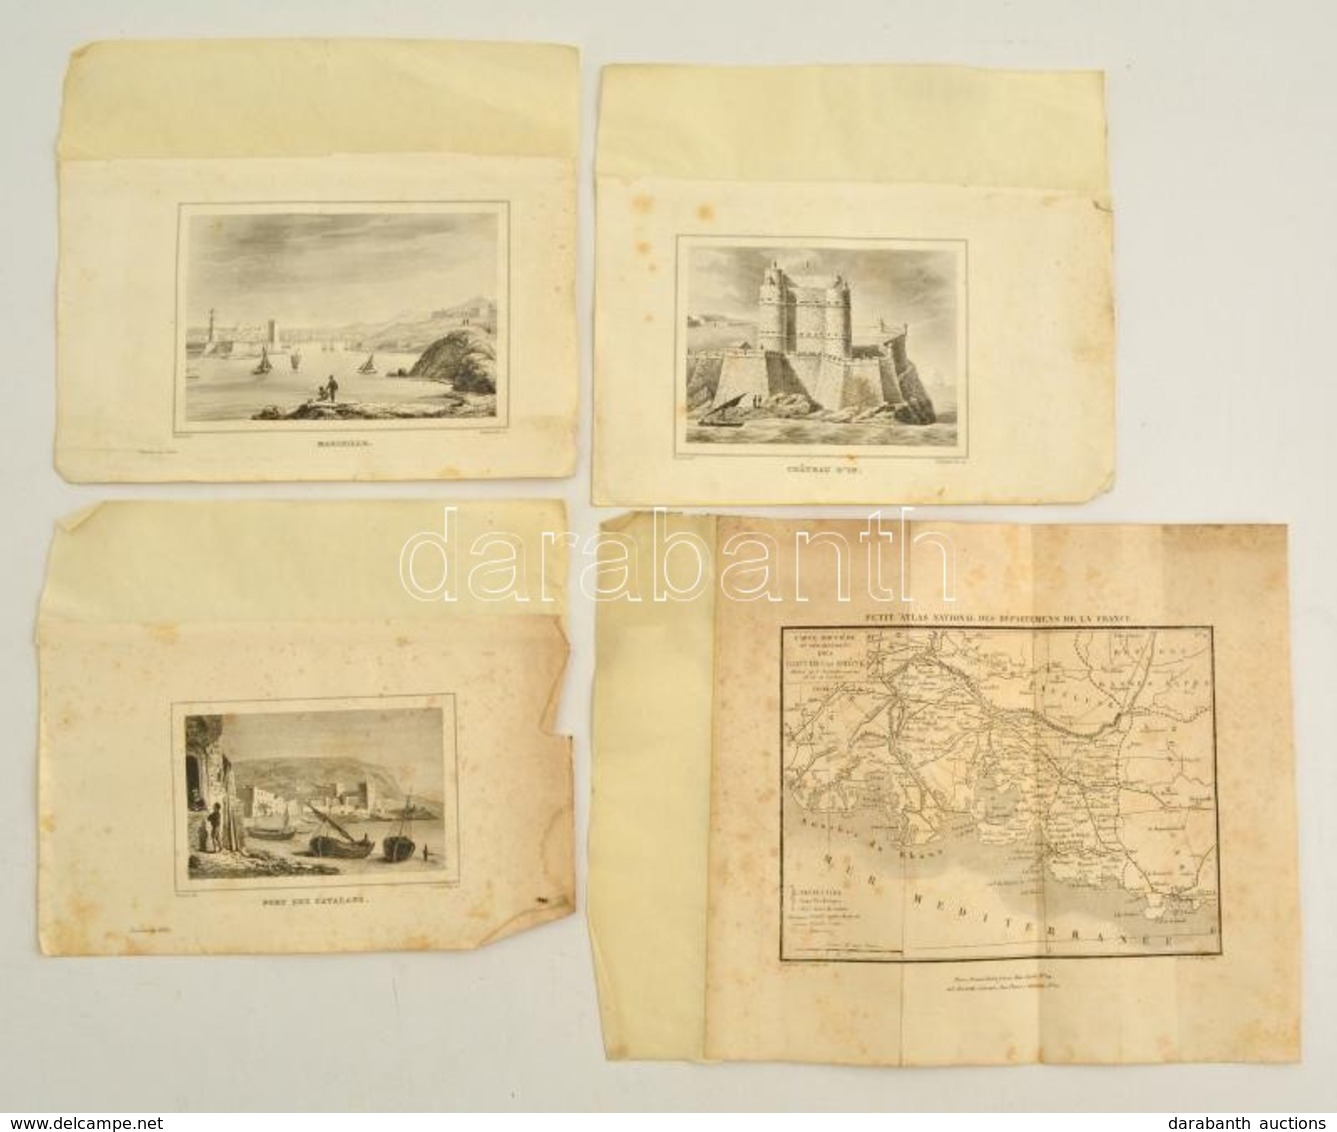 Cca 1800-1840 Réz és Acélmeszet Gyűjtemény. Franciaország Megyéinek Rézmetszetű Térképei, Valamint Acélmetszetű Képek A  - Stiche & Gravuren